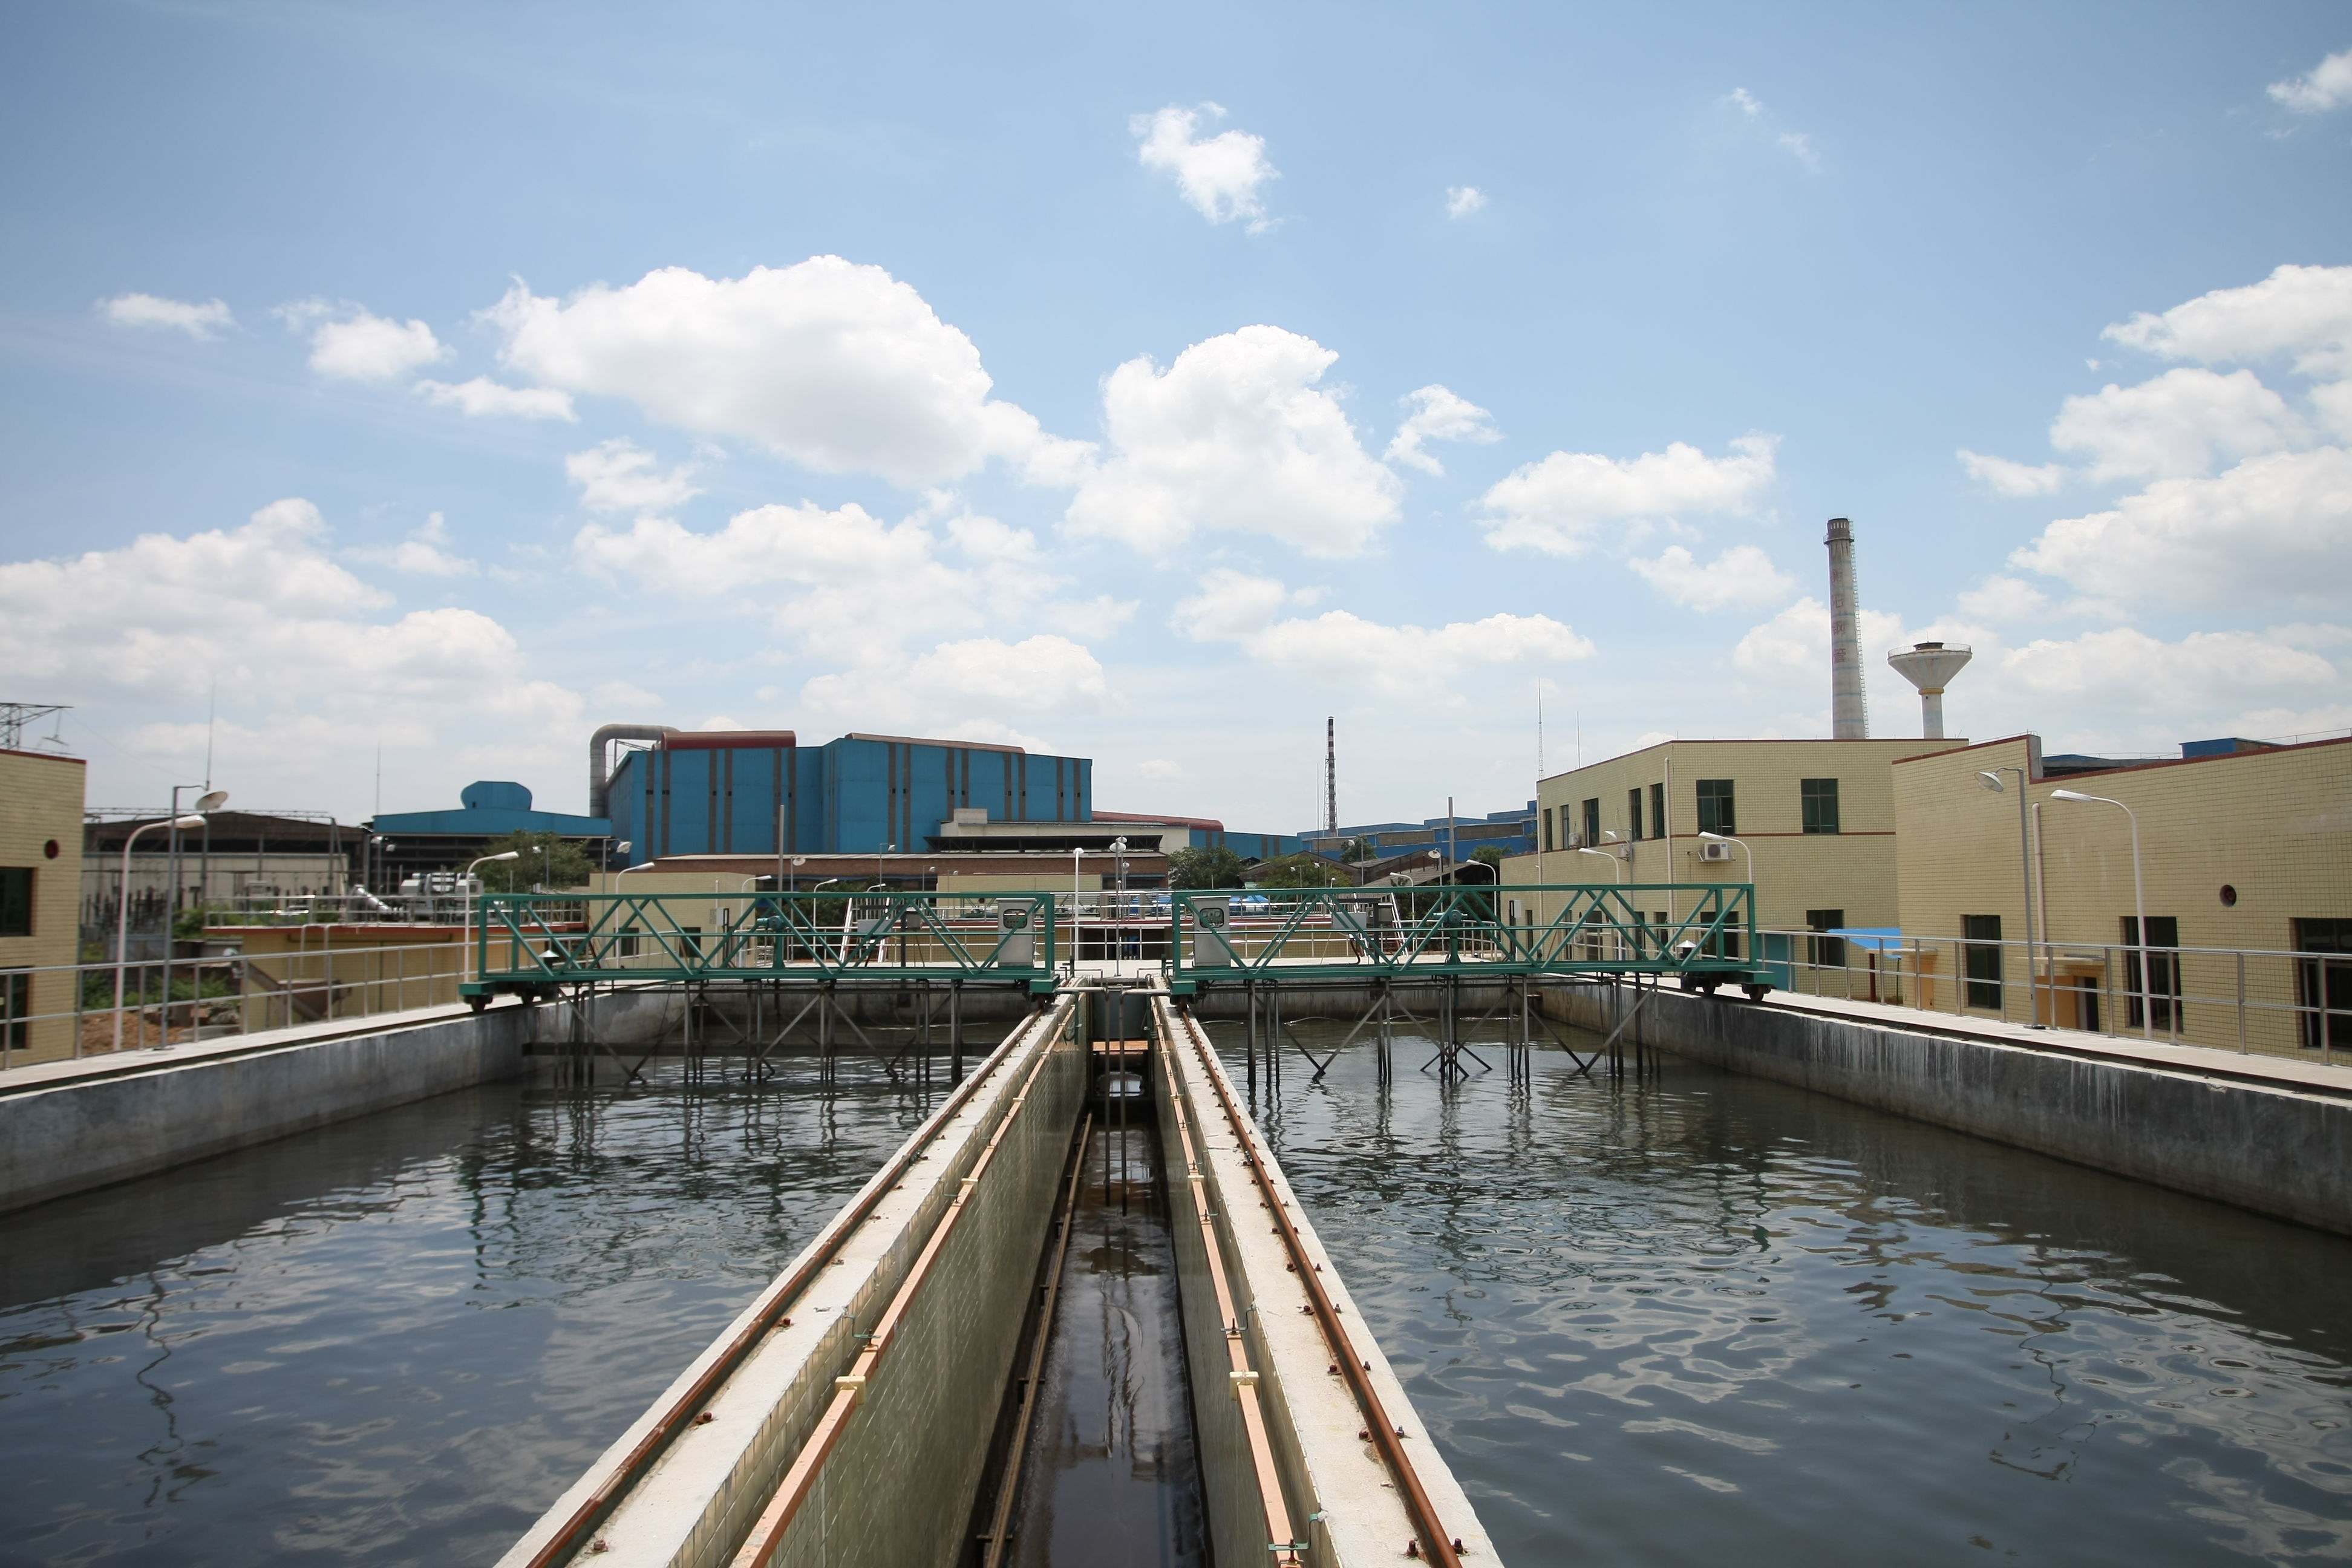 东方汇智-光大水务二期污水处理收费收益权资产支持专项计划项目状态更新为已通过